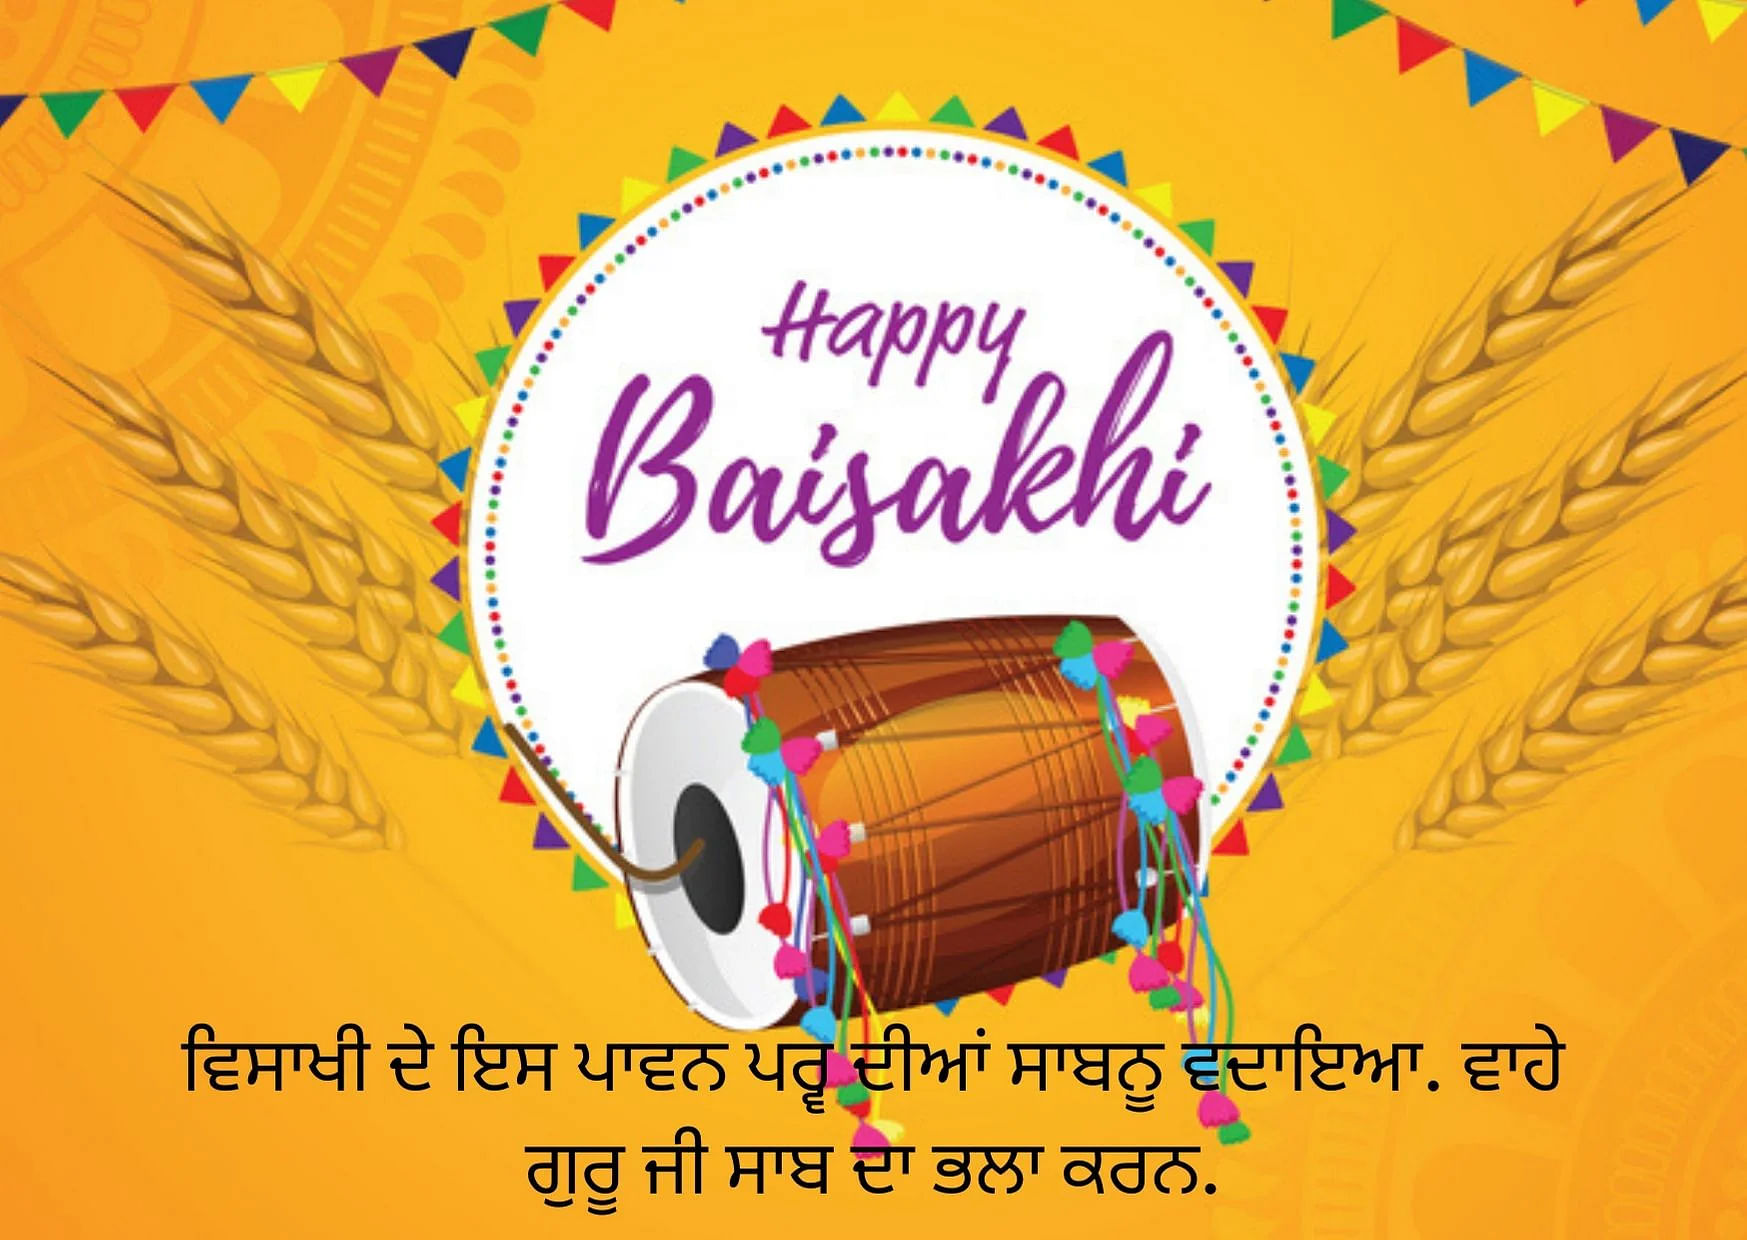 Baisakhi Wishes in Punjabi